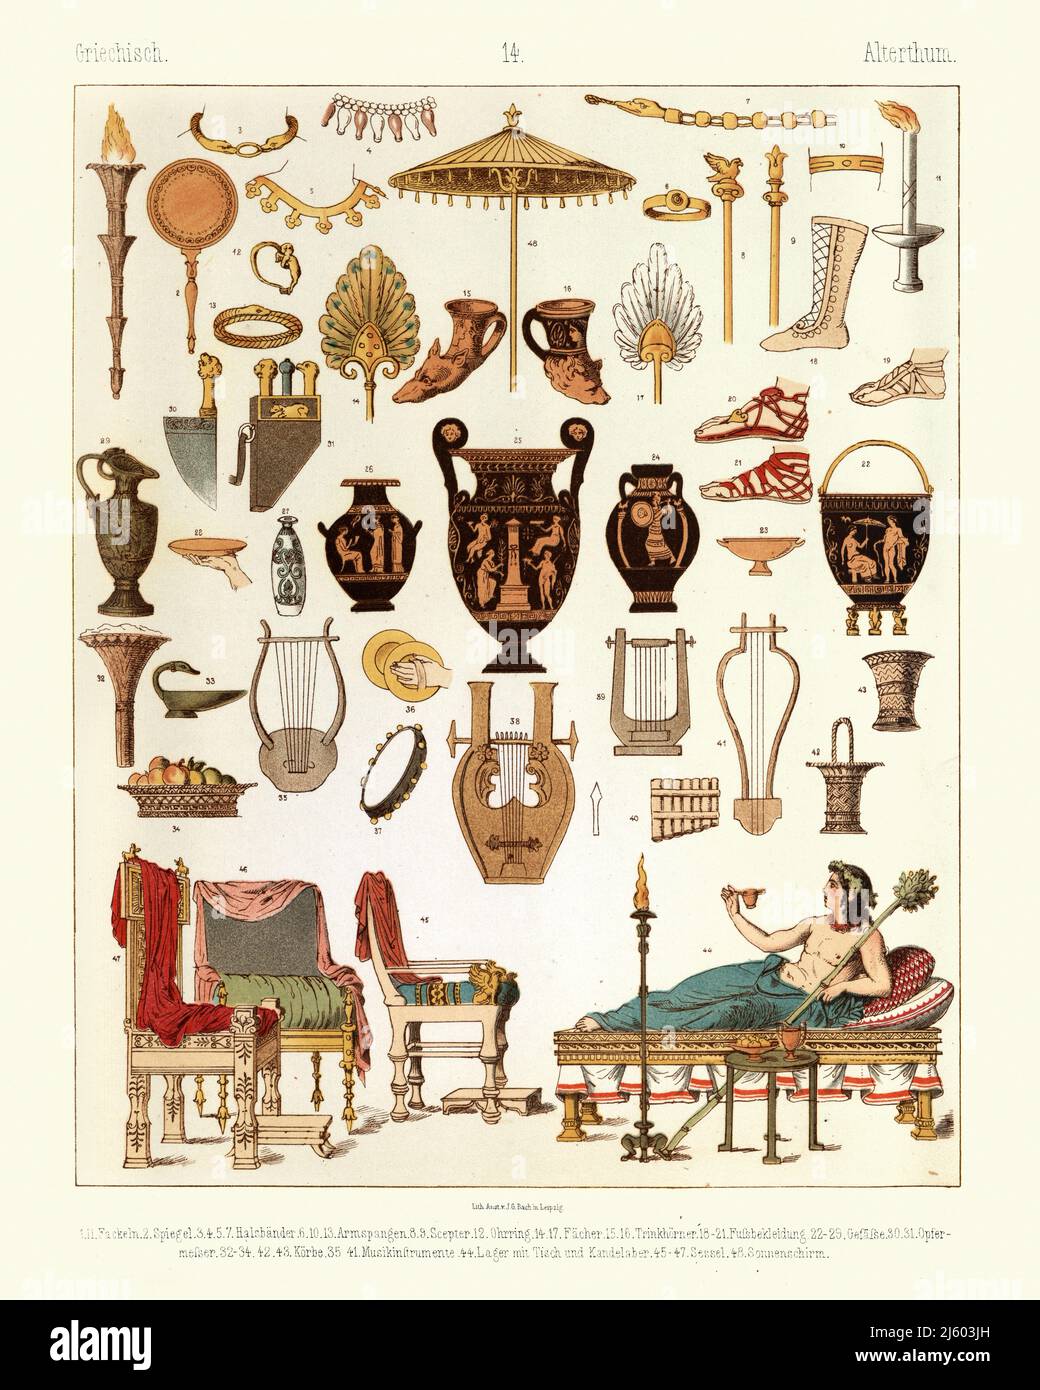 Oggetti e manufatti dell'antica Grecia, vaso greco, mobili, lire, strumenti musicali, Thrones Foto Stock